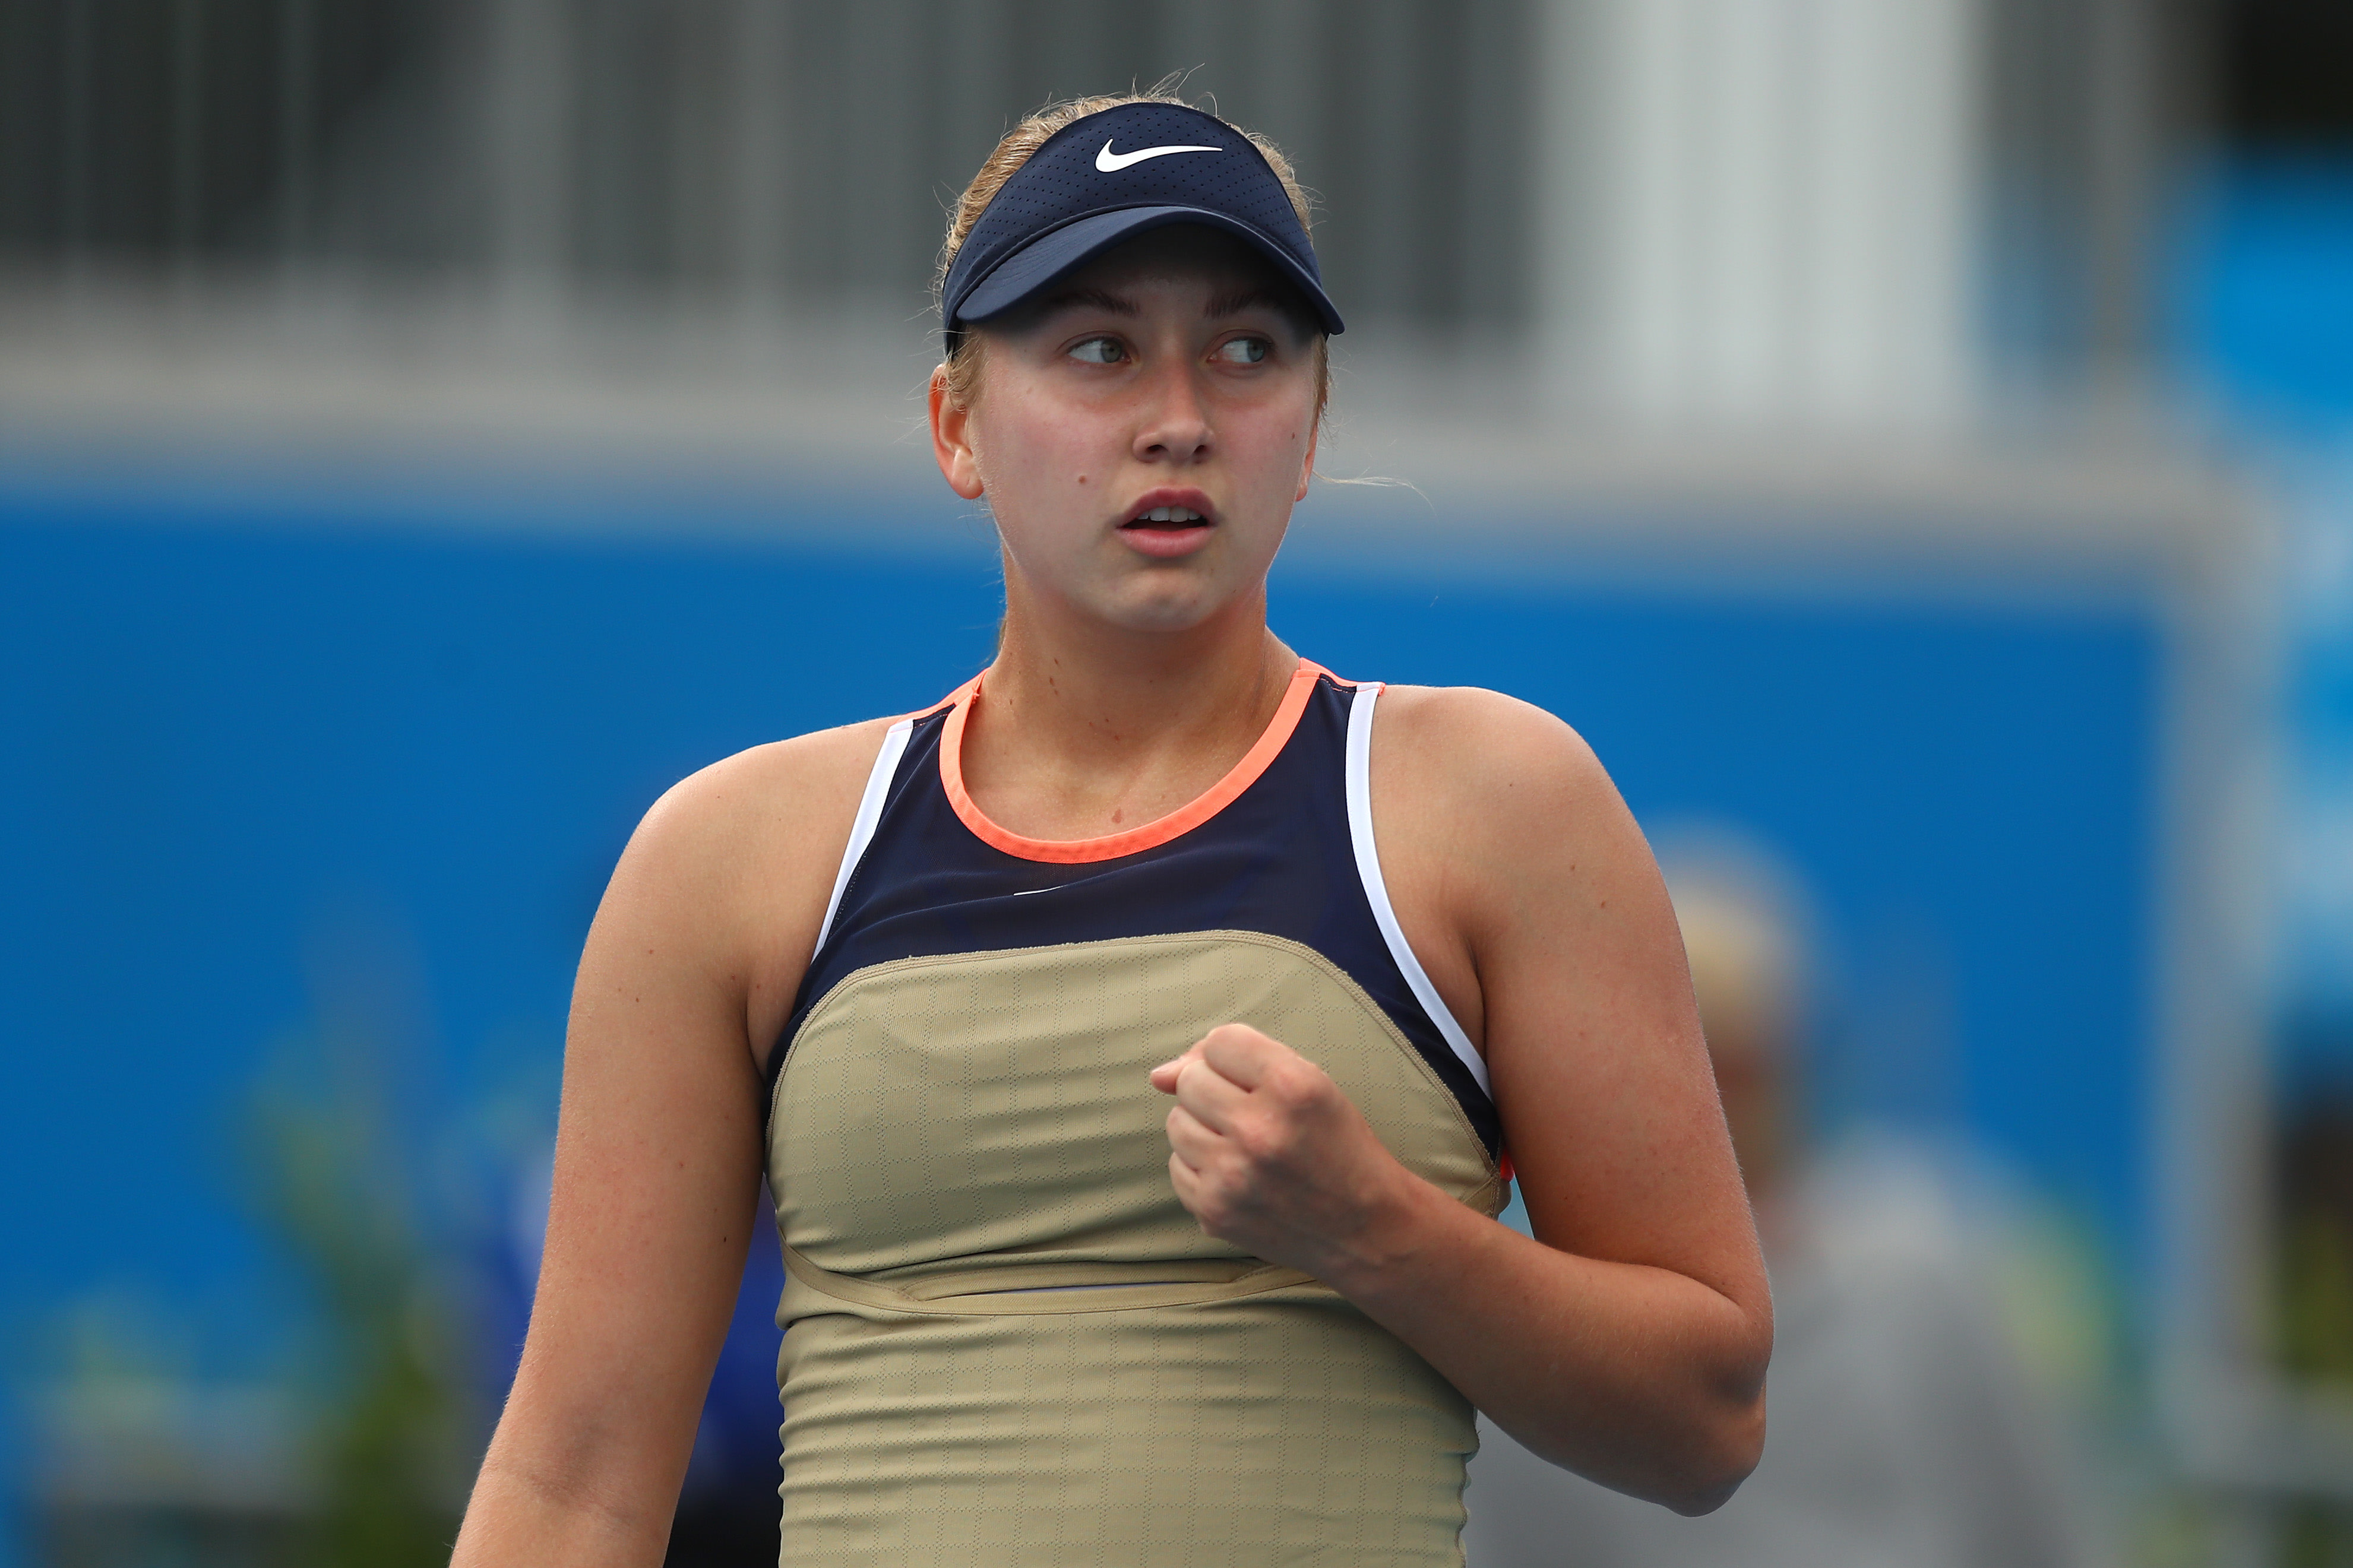 Potapova bonds with Andreescu through comeback, eyes Serena AO rematch